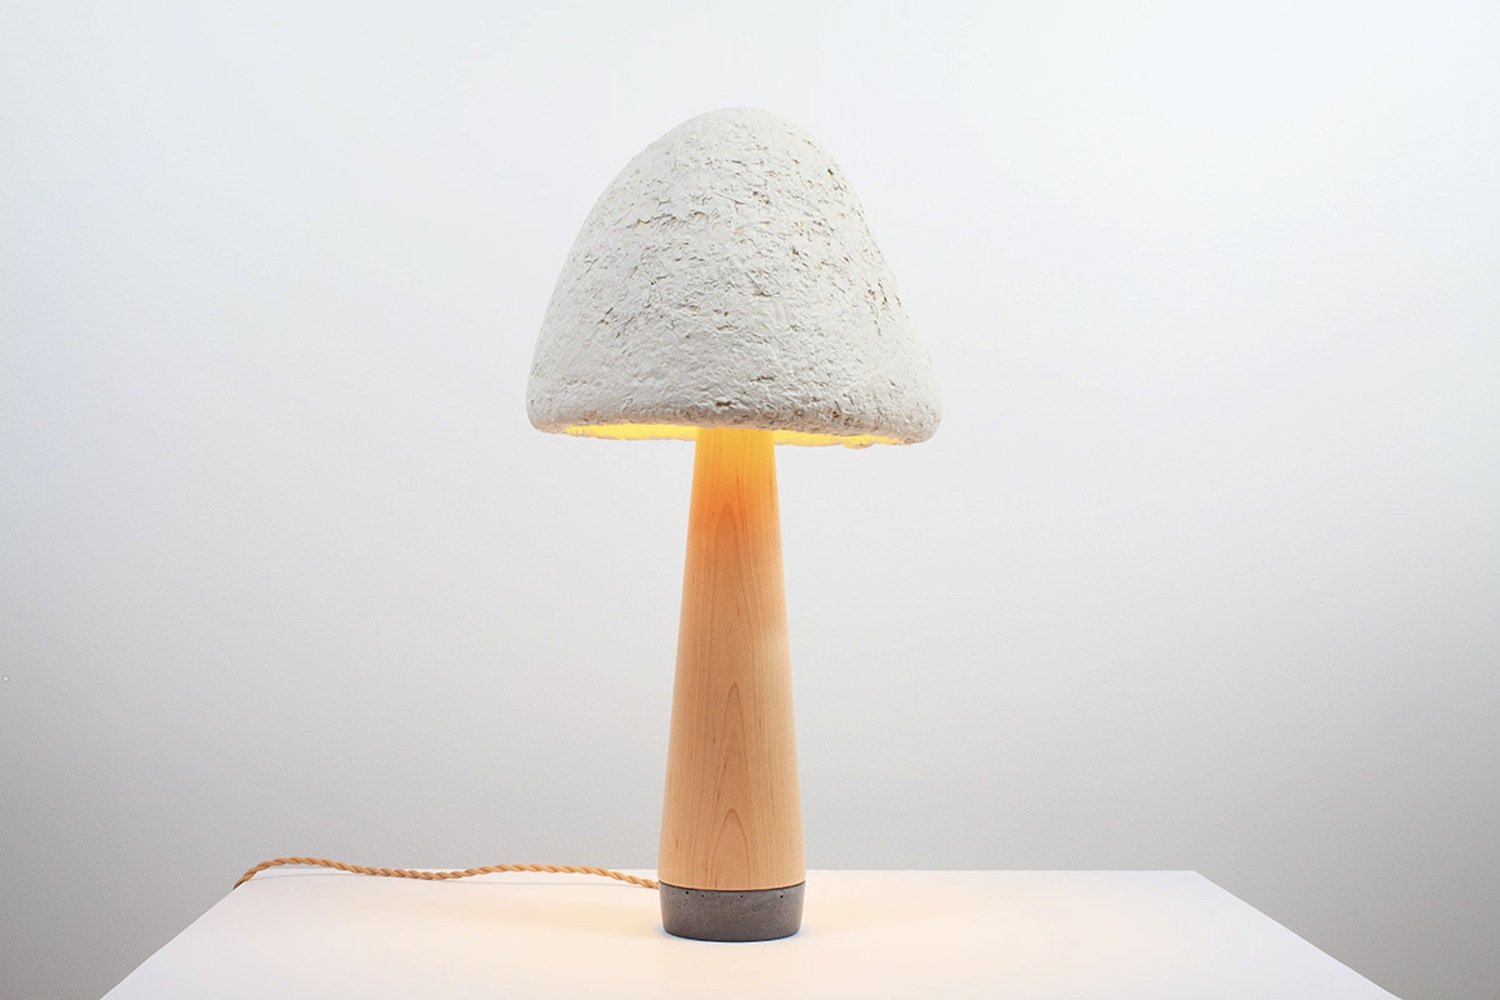 Lampe aus Pilz in Pilzform: Auch dieses Exemplar gehört zum Portfolio der Künstlerin. 